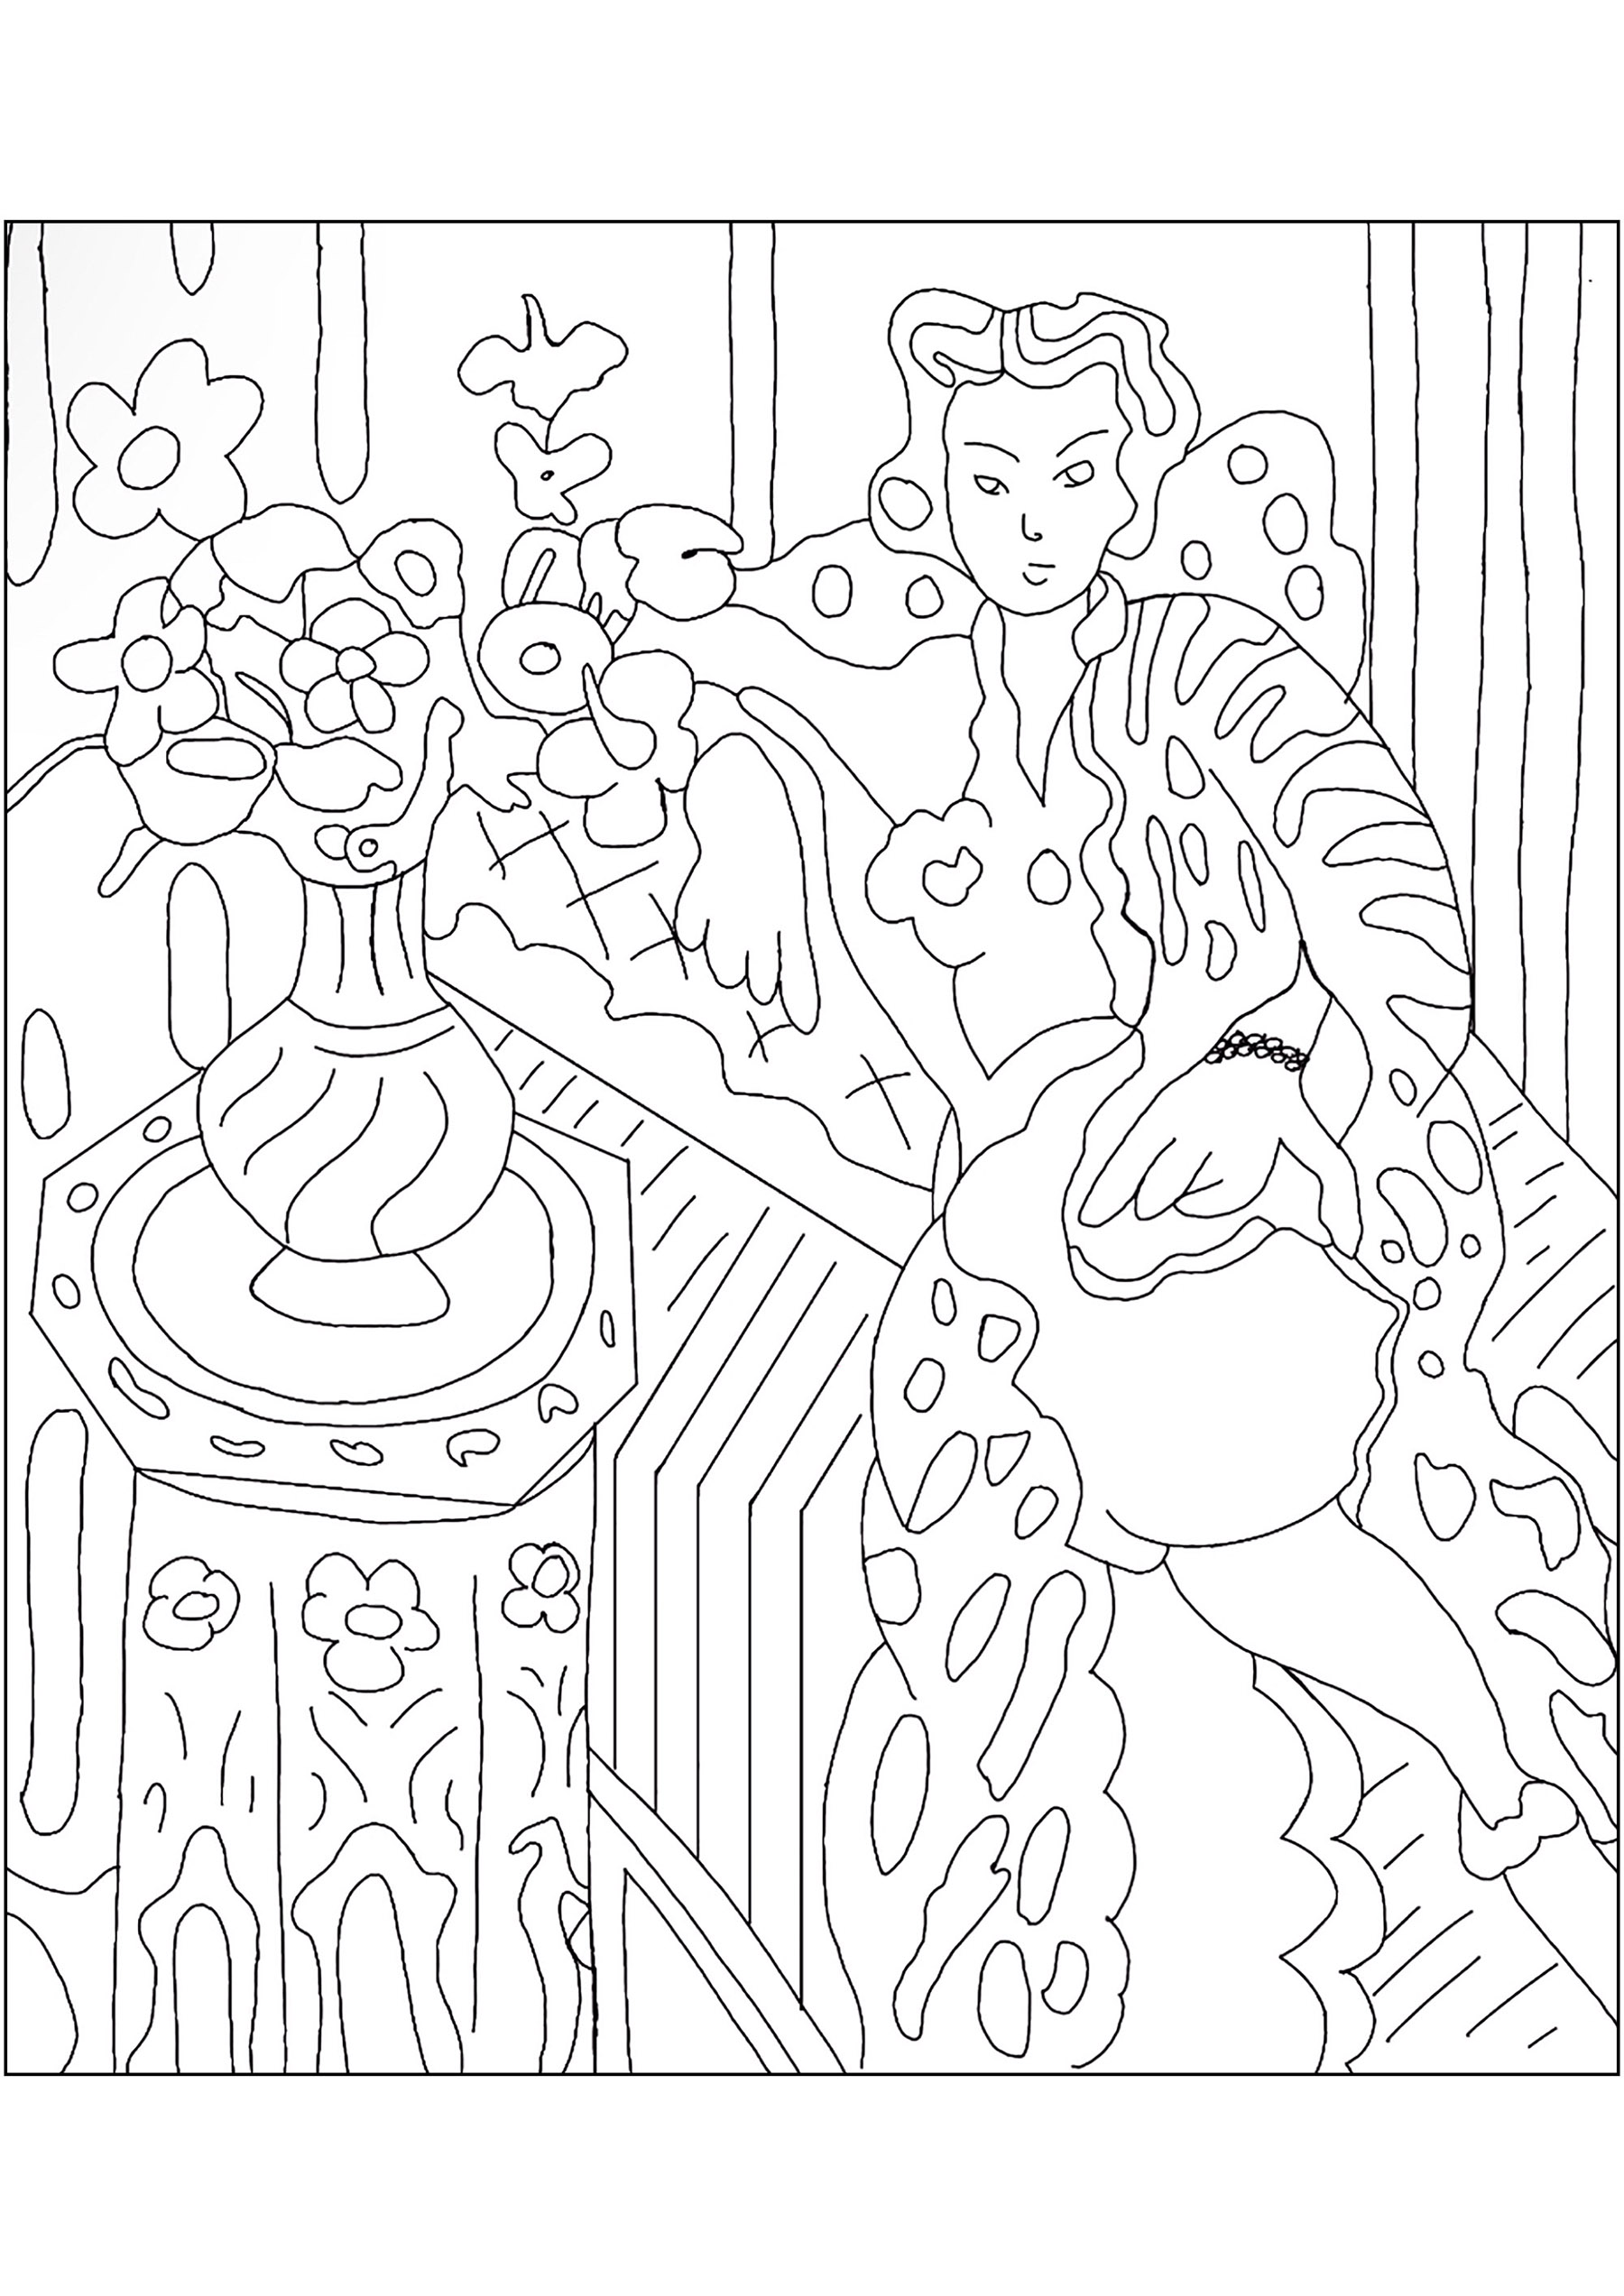 Coloreado basado en el cuadro de Henri Matisse 'Odalisque a la robe persane' (1937)